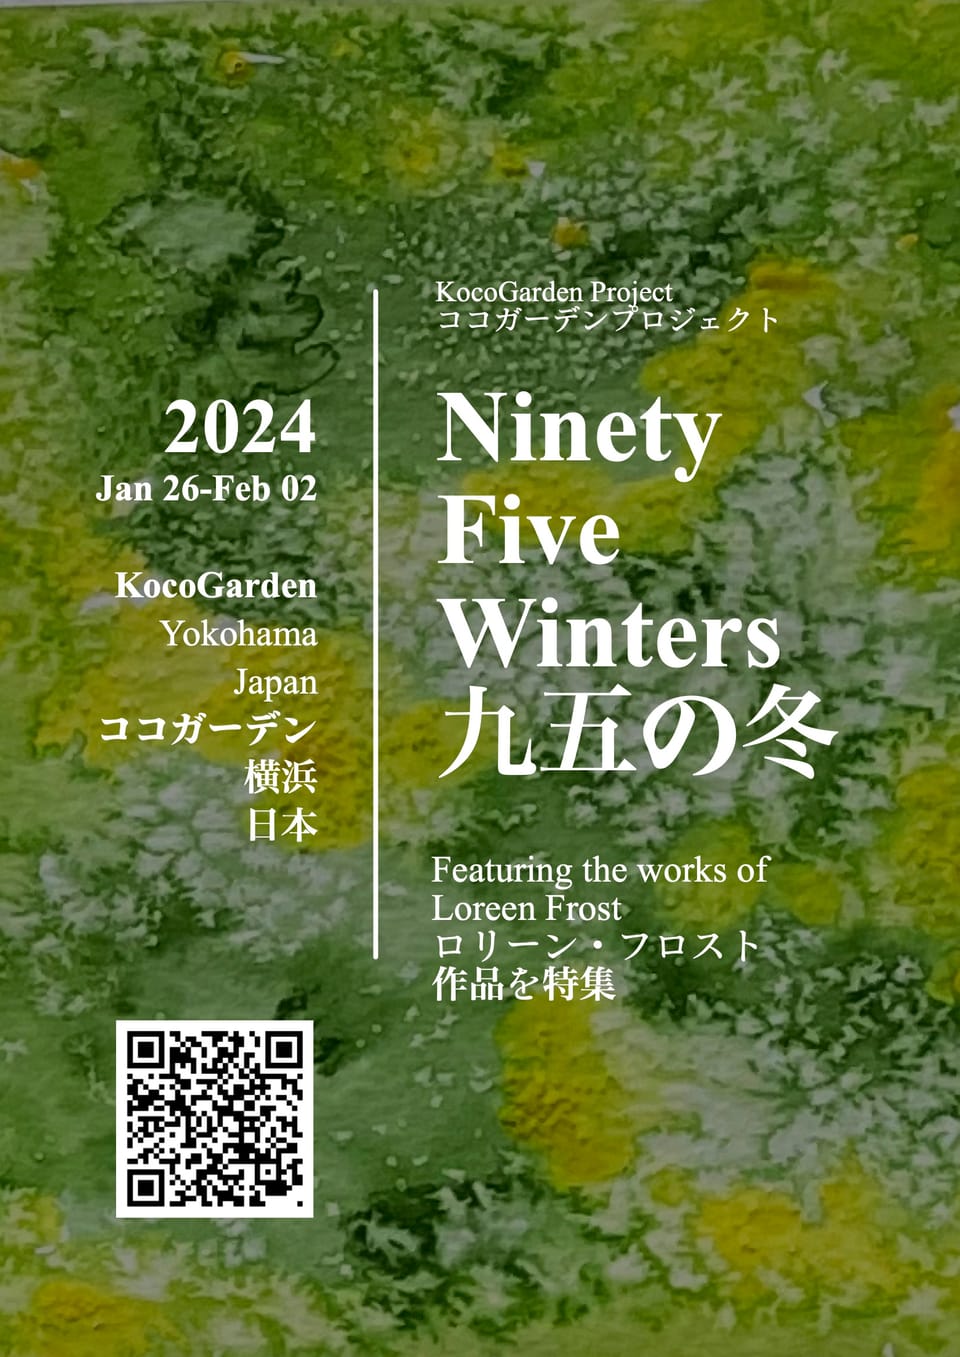 Ninety Five Winters